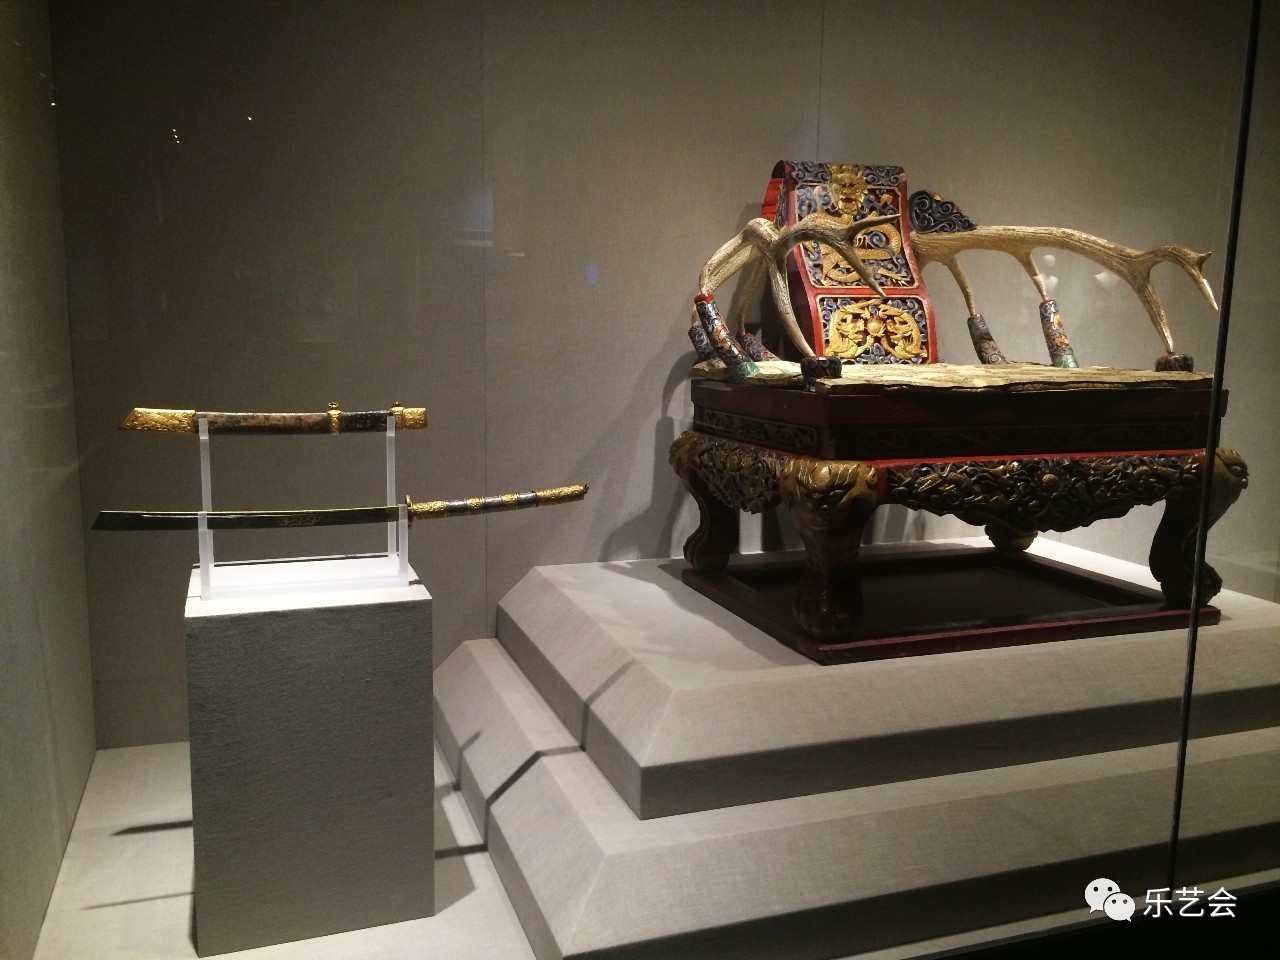 猫:《内蒙古博物院:天骄蒙古--蒙古族历史文化